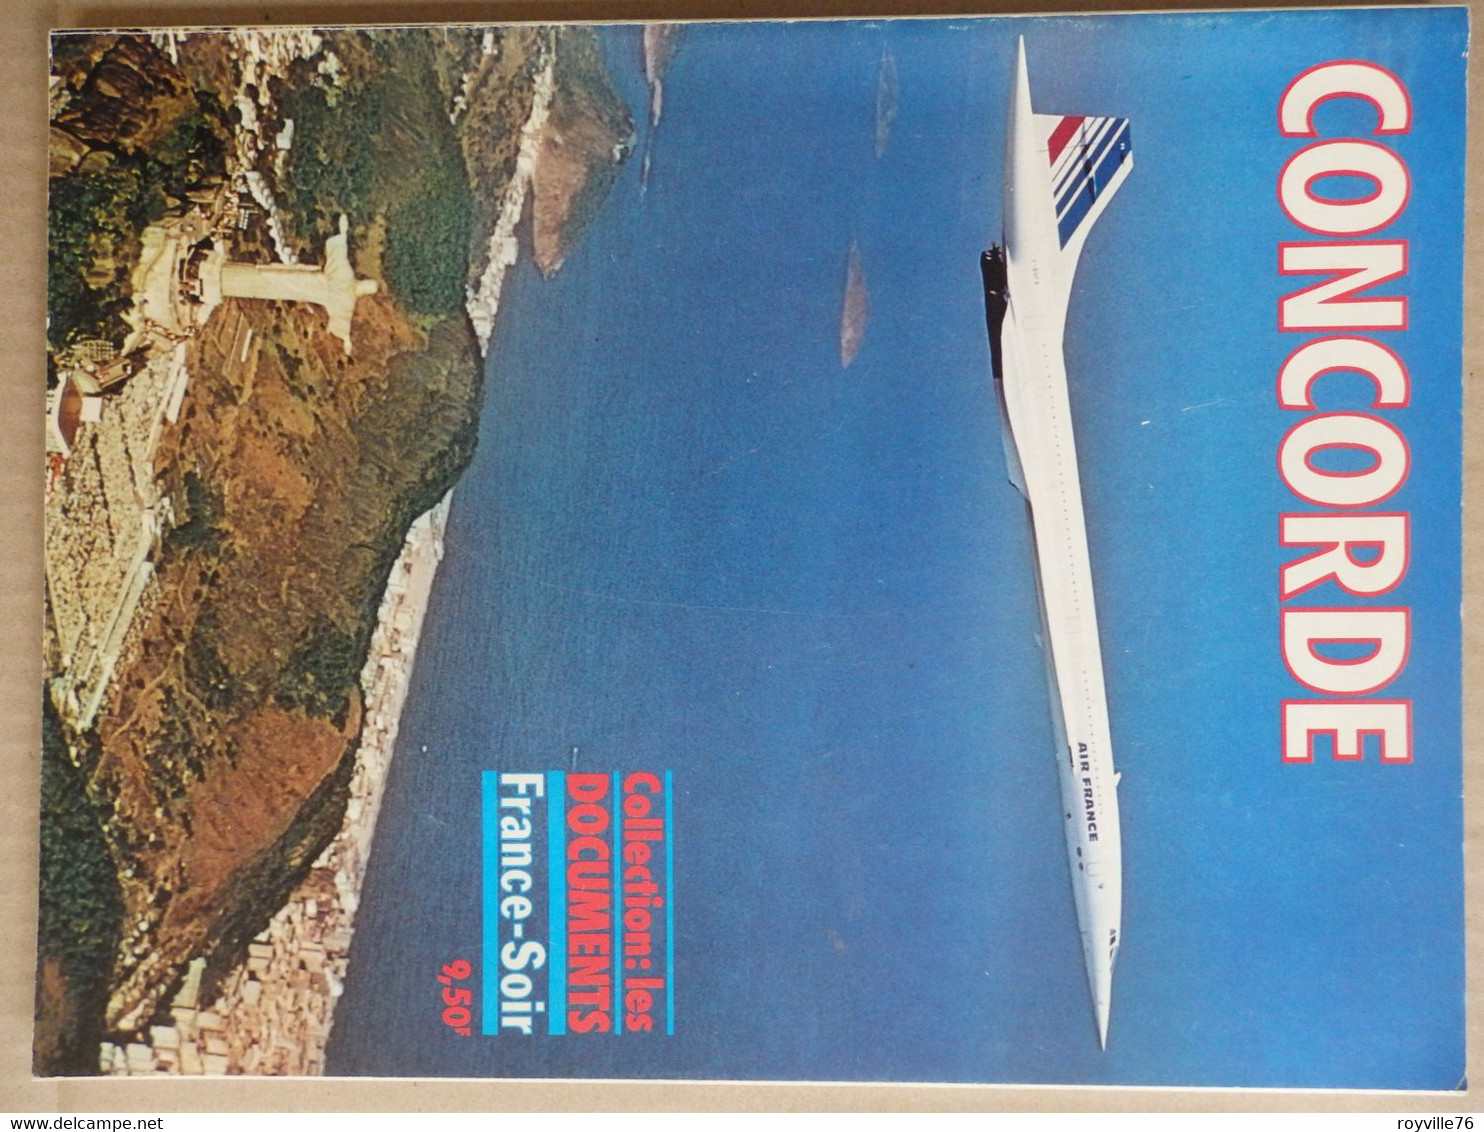 Edition Spécial France-Soir 66 P. Entièrement Dédié Au Concorde 1975 - Inflight Magazines